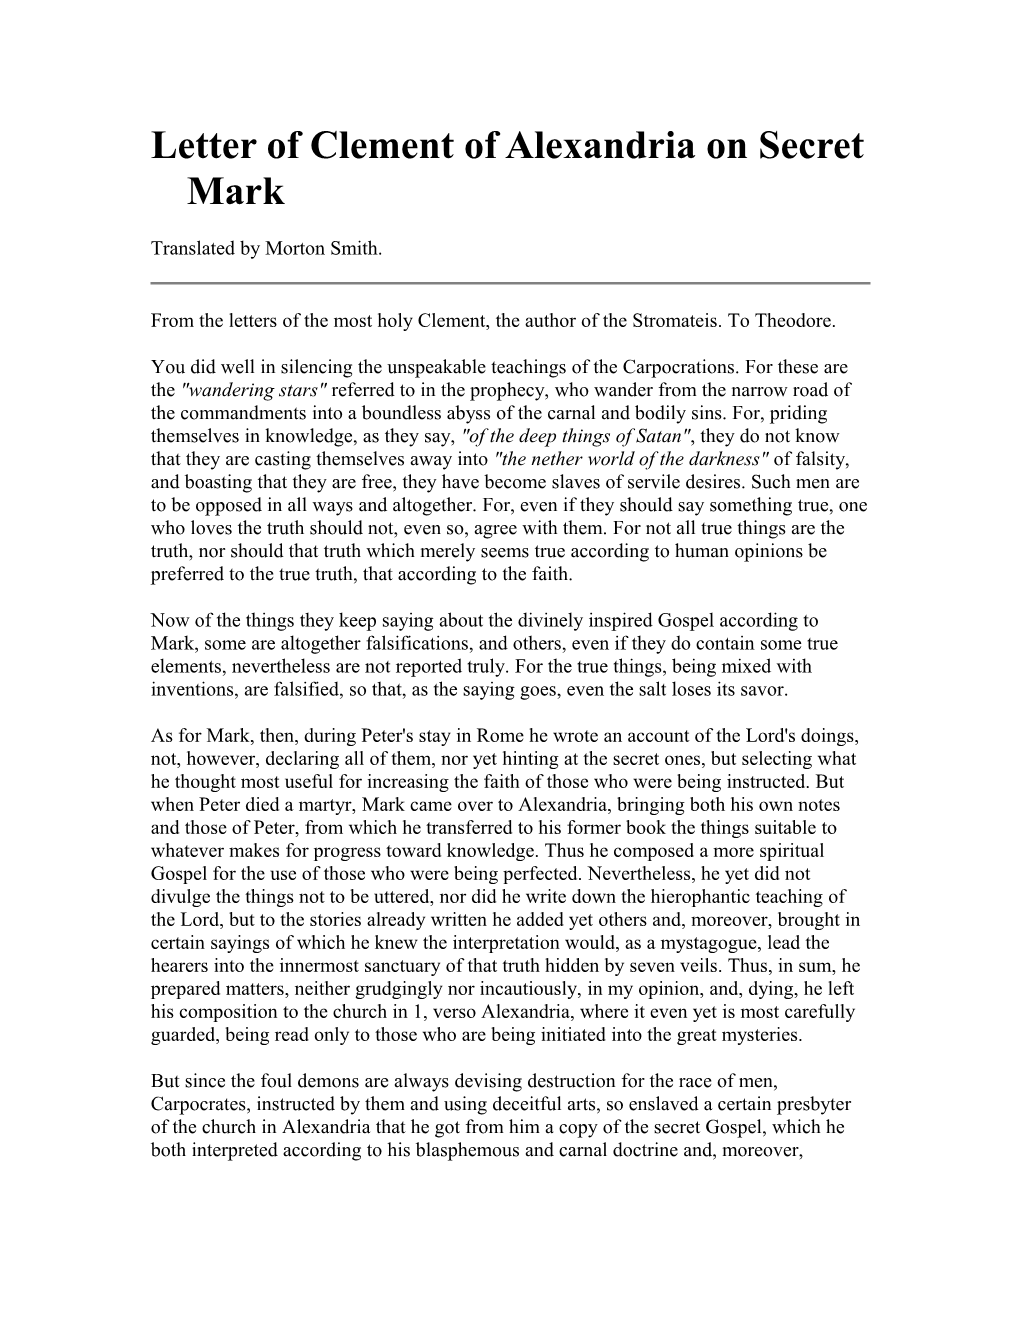 Letter of Clement of Alexandria on Secret Mark